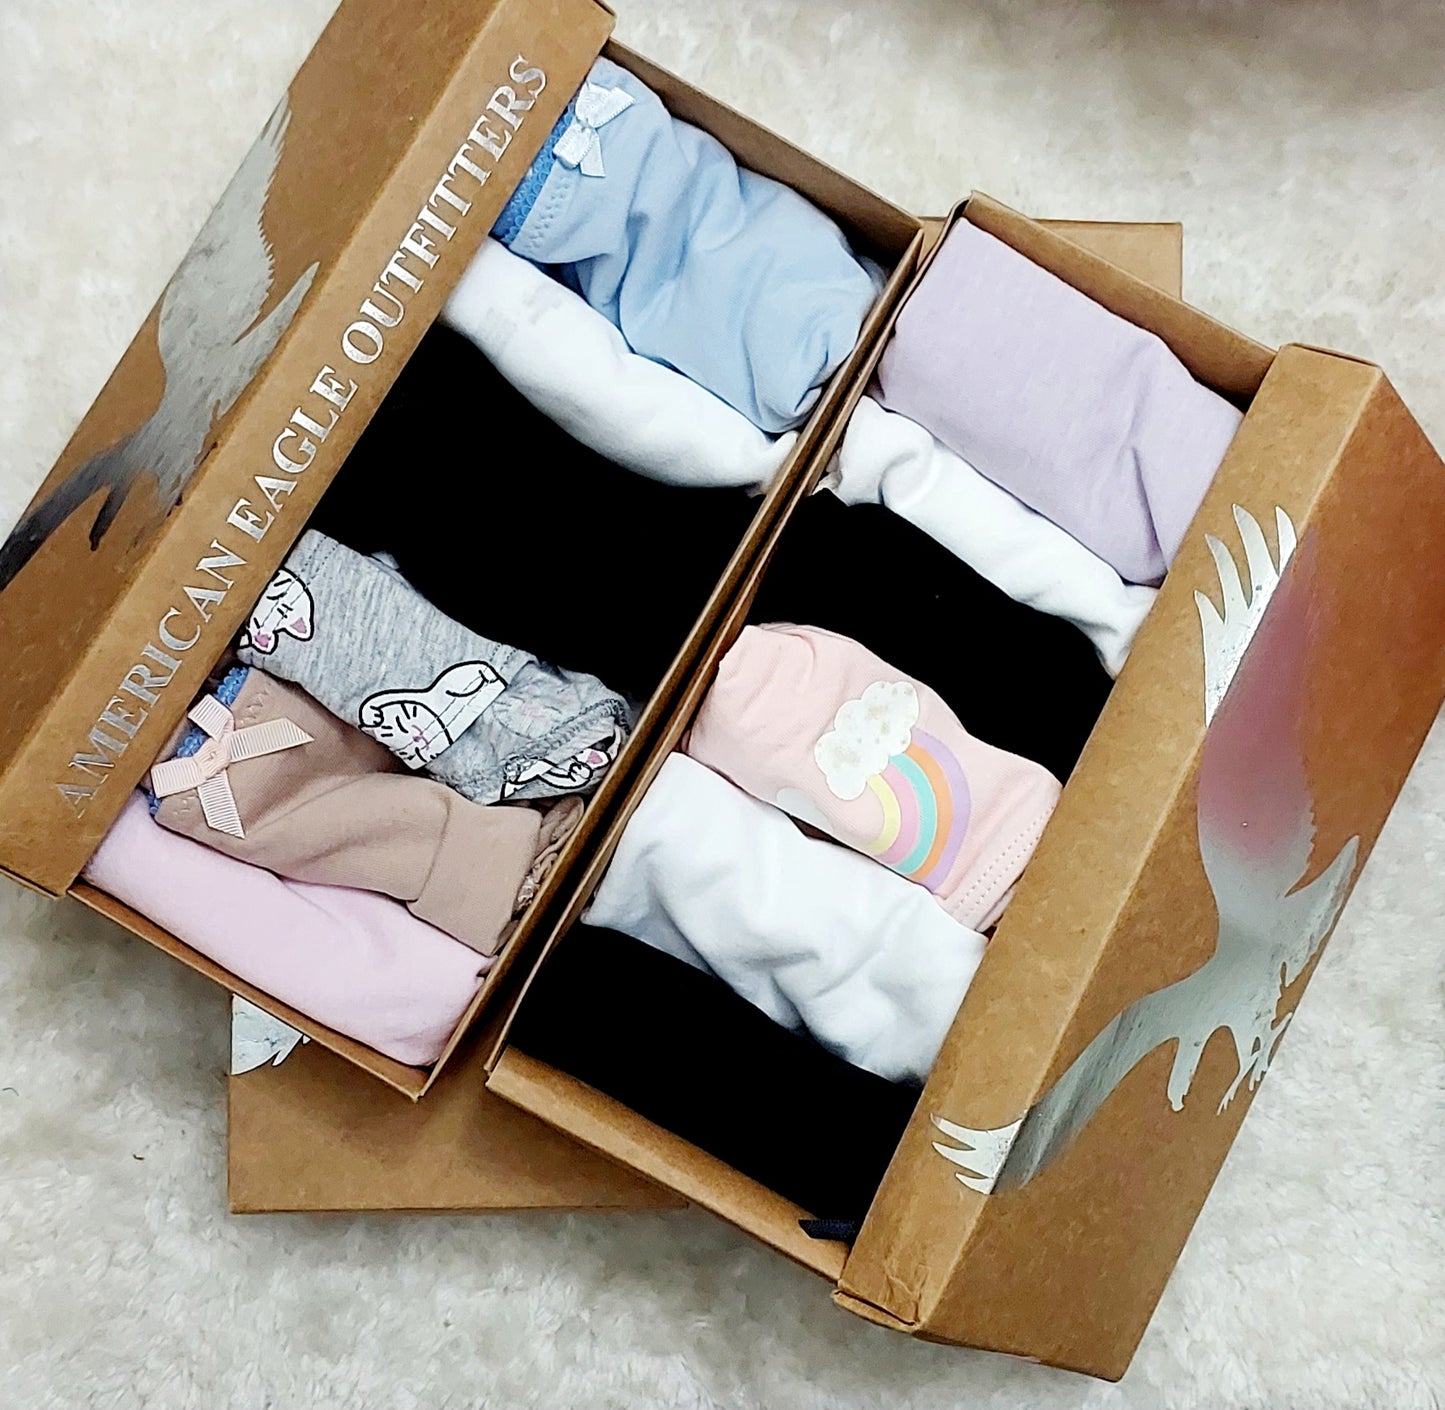 6 pcs Underwear per box